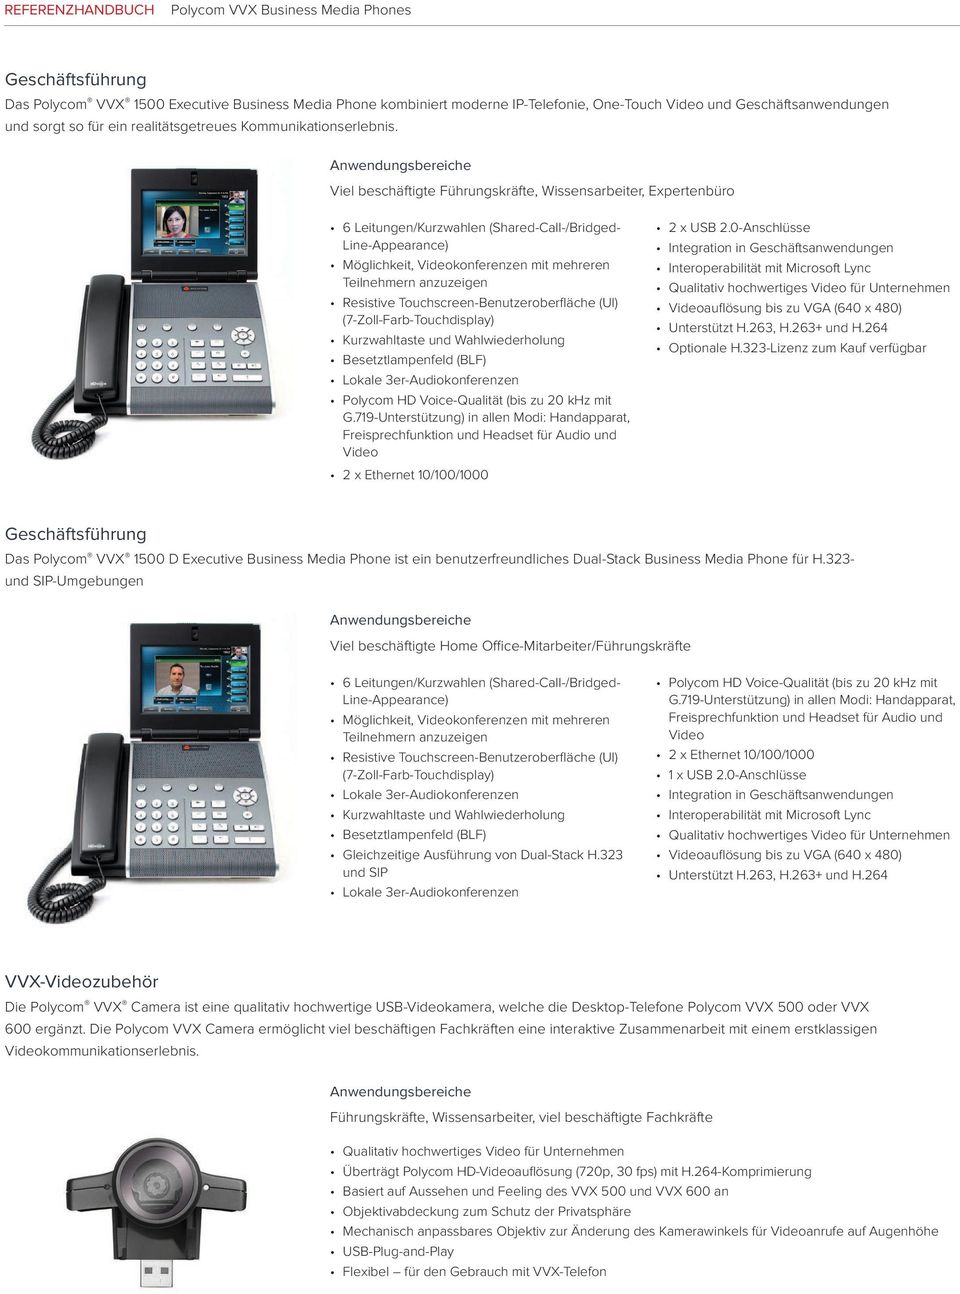 Resistive Touchscreen-Benutzeroberfläche (UI) (7-Zoll-Farb-Touchdisplay) Kurzwahltaste und Wahlwiederholung Besetztlampenfeld (BLF) Polycom HD Voice-Qualität (bis zu 20 khz mit G.